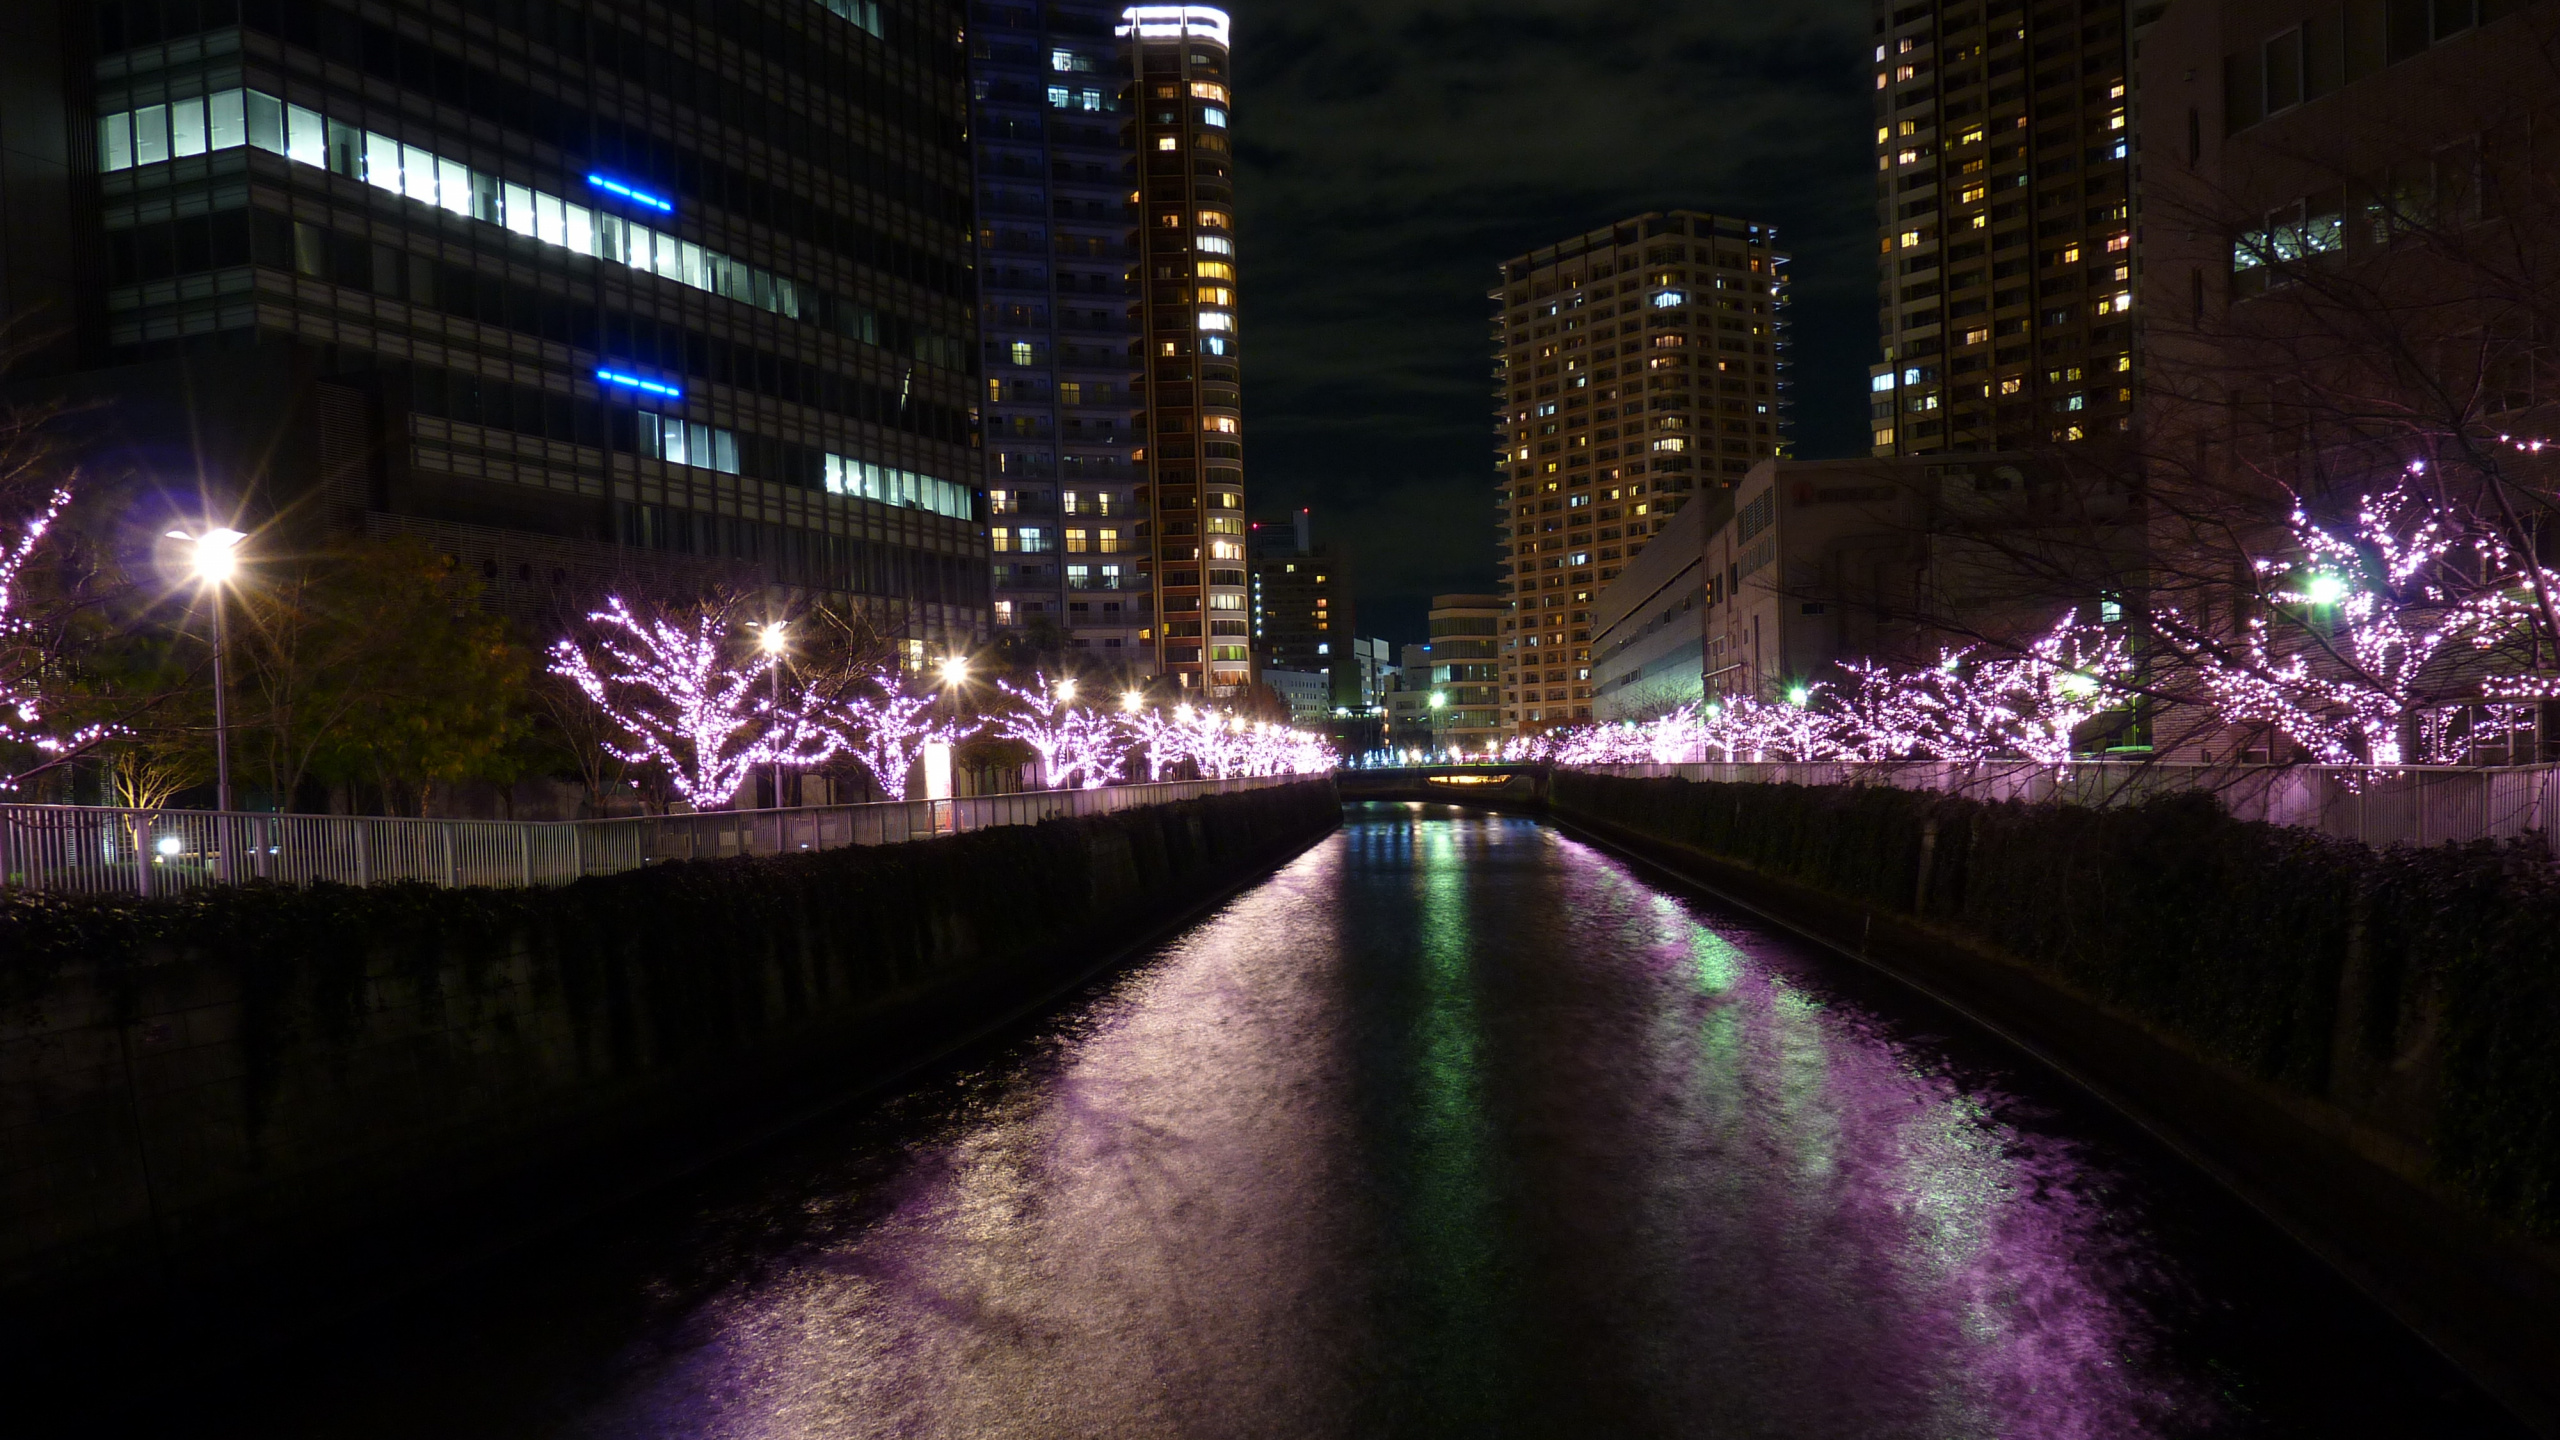 Luces Púrpuras en el Puente Durante la Noche. Wallpaper in 2560x1440 Resolution